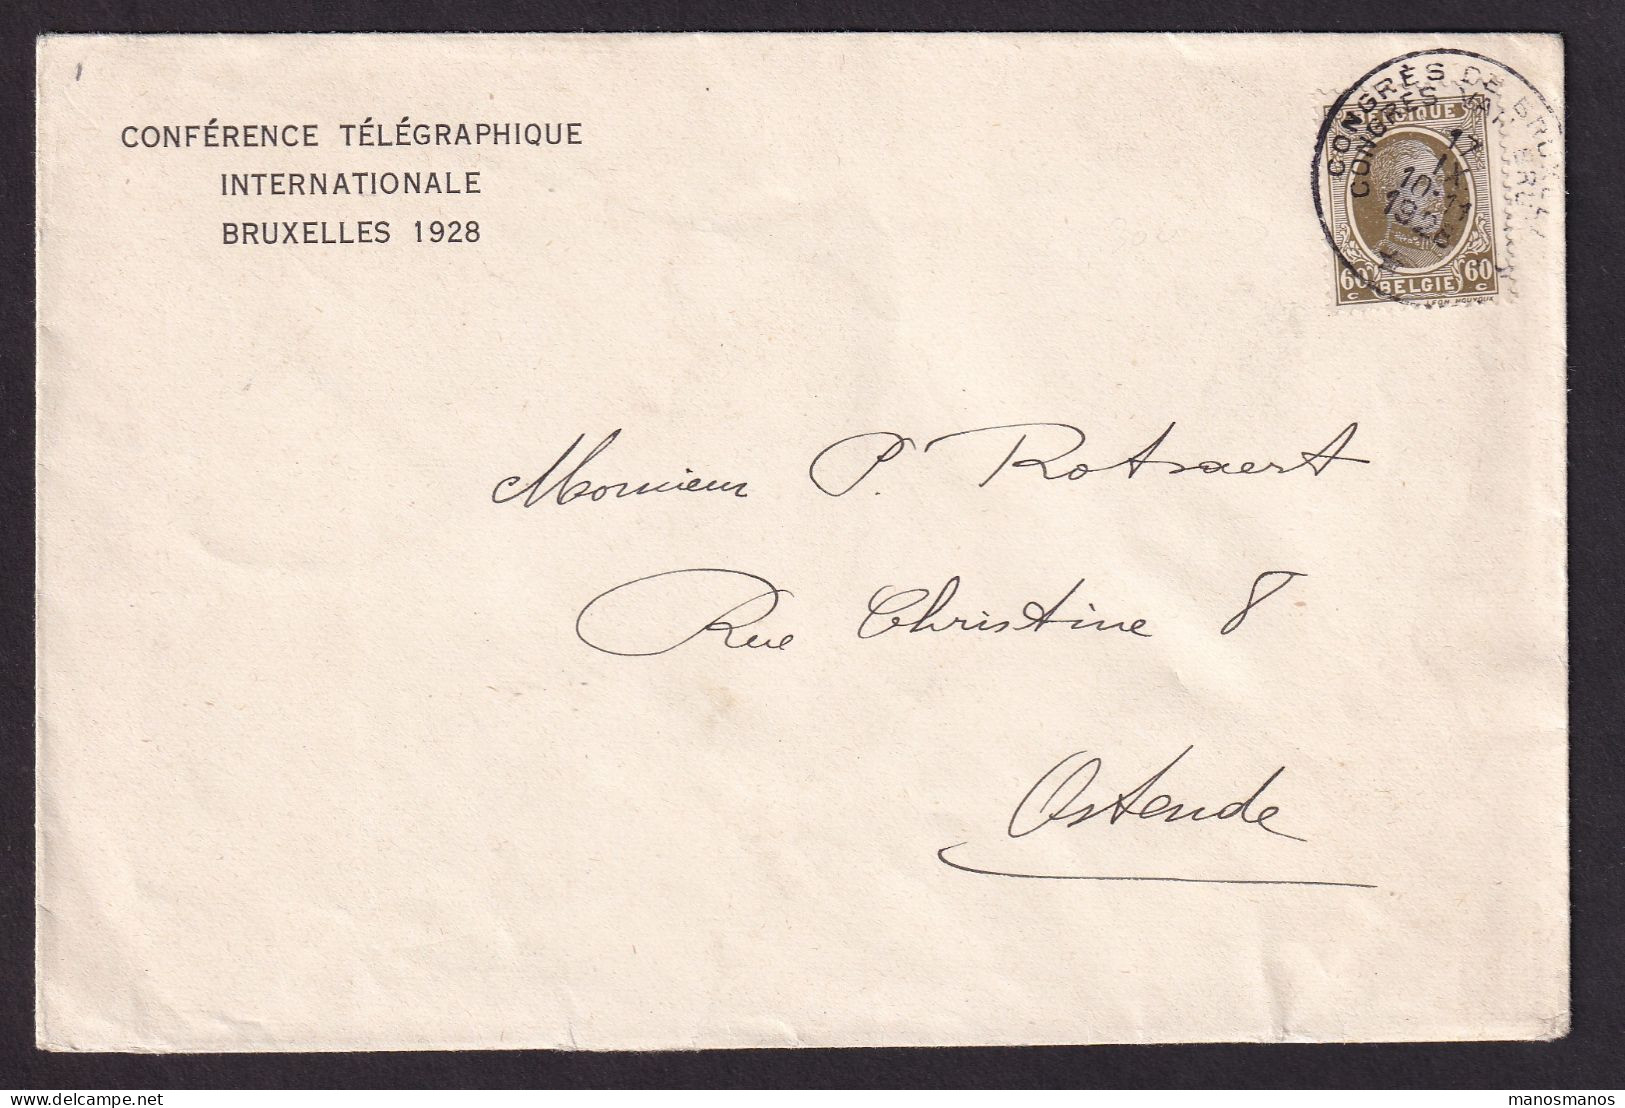 DDEE 848 -- Enveloppe Entete Conférence Télégraphique Internationale BRUXELLES 1928 - TP Houyoux Cachet Du Congrès RRR - Telegramas